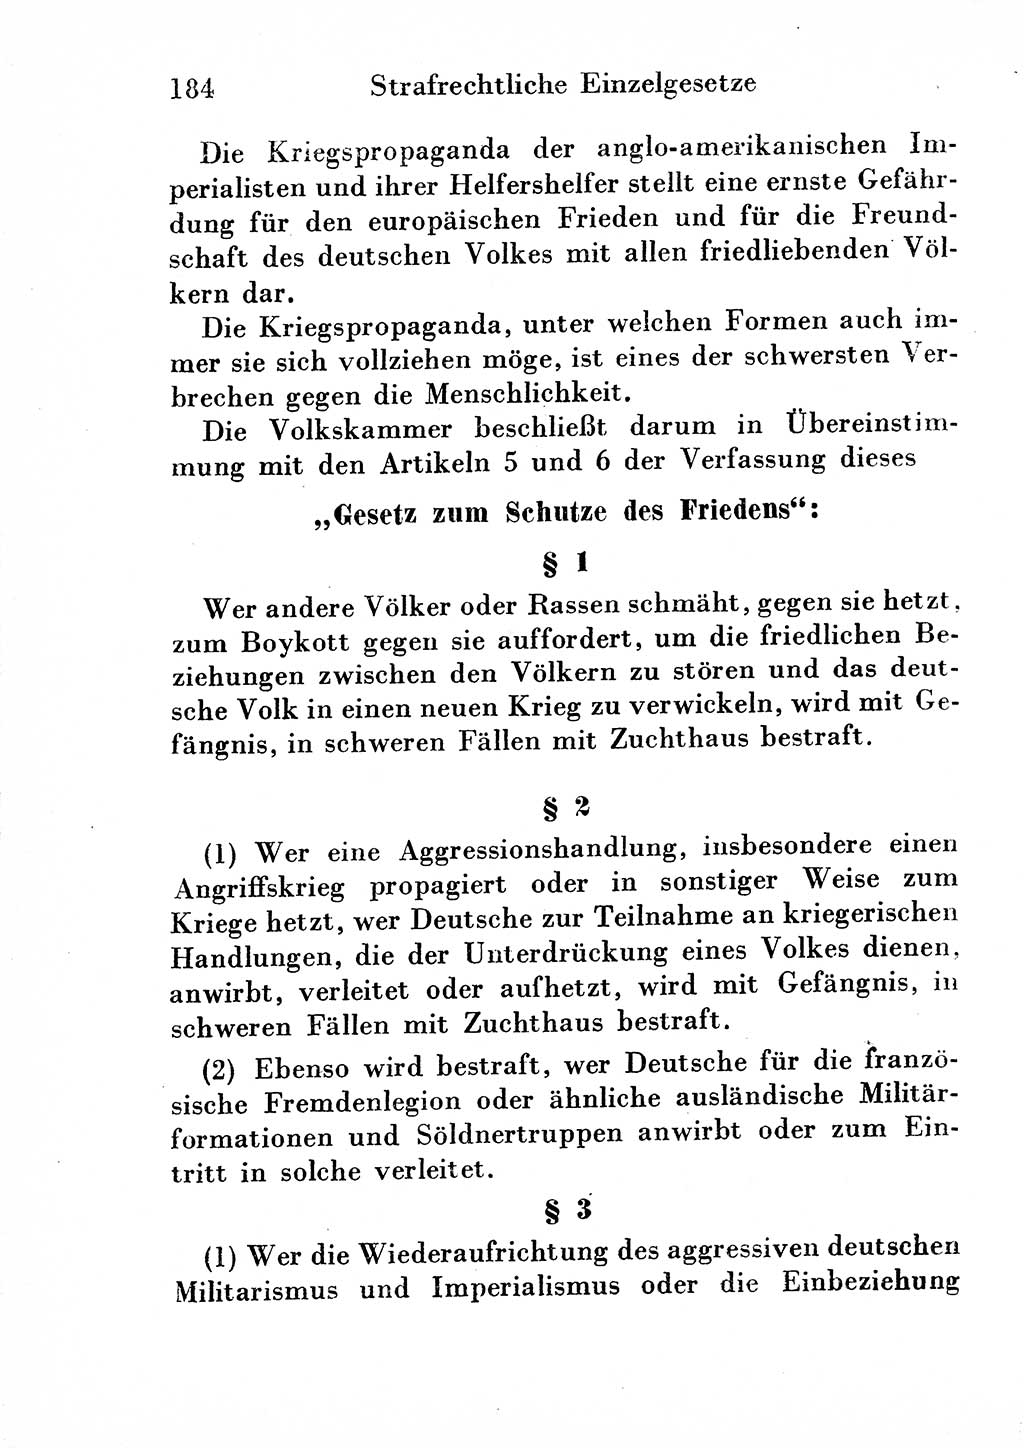 Strafgesetzbuch (StGB) und andere Strafgesetze [Deutsche Demokratische Republik (DDR)] 1954, Seite 184 (StGB Strafges. DDR 1954, S. 184)